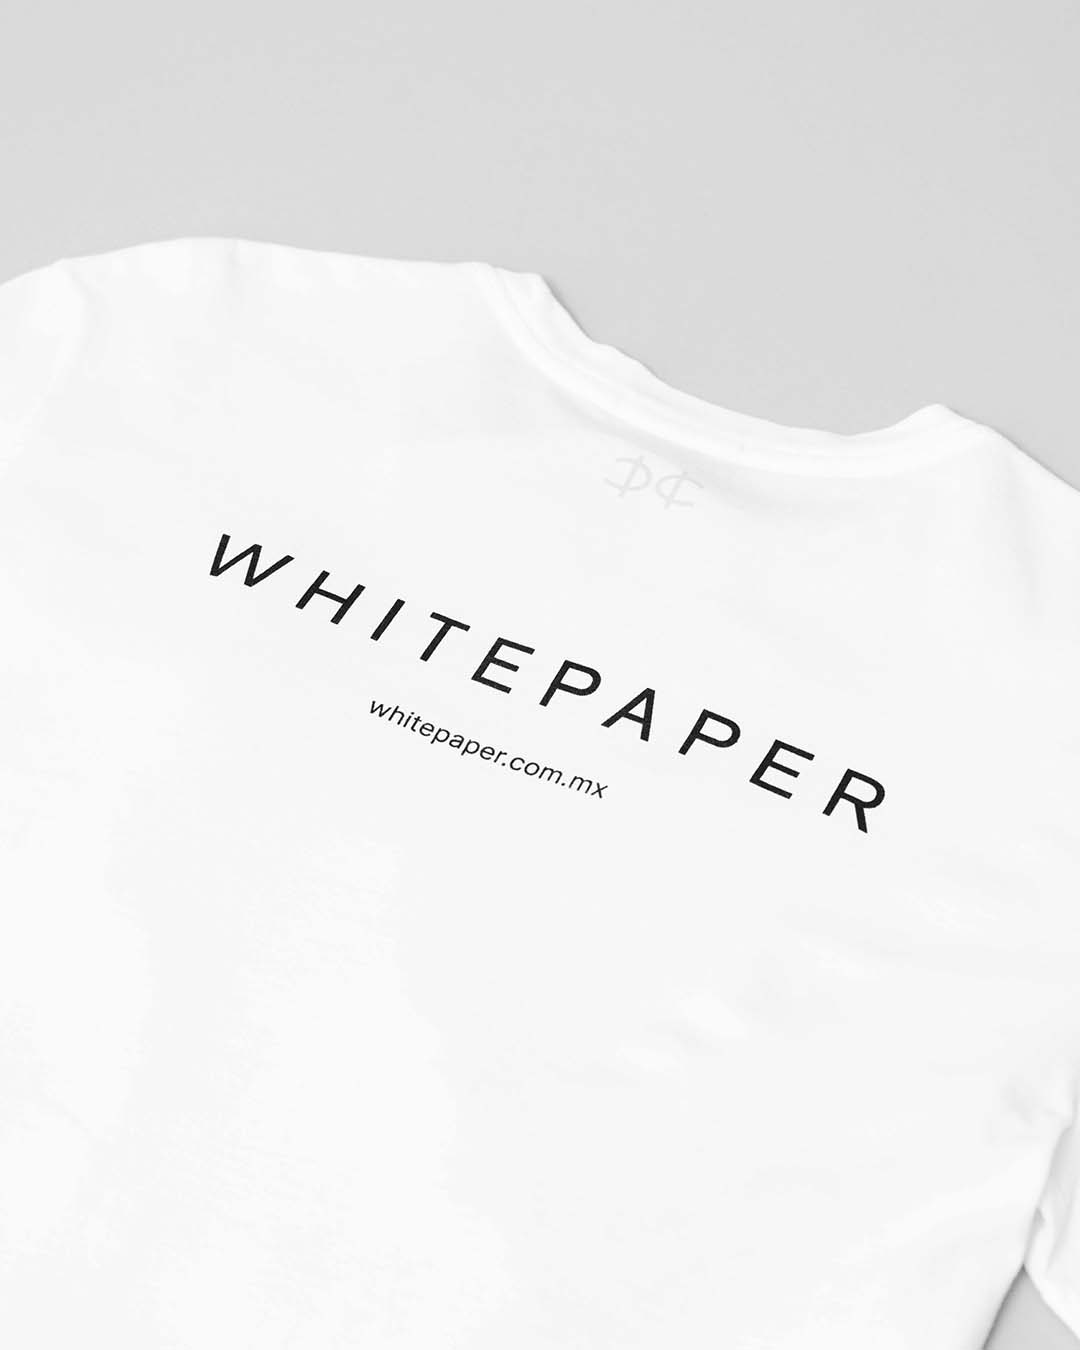 White Paper Tee - White